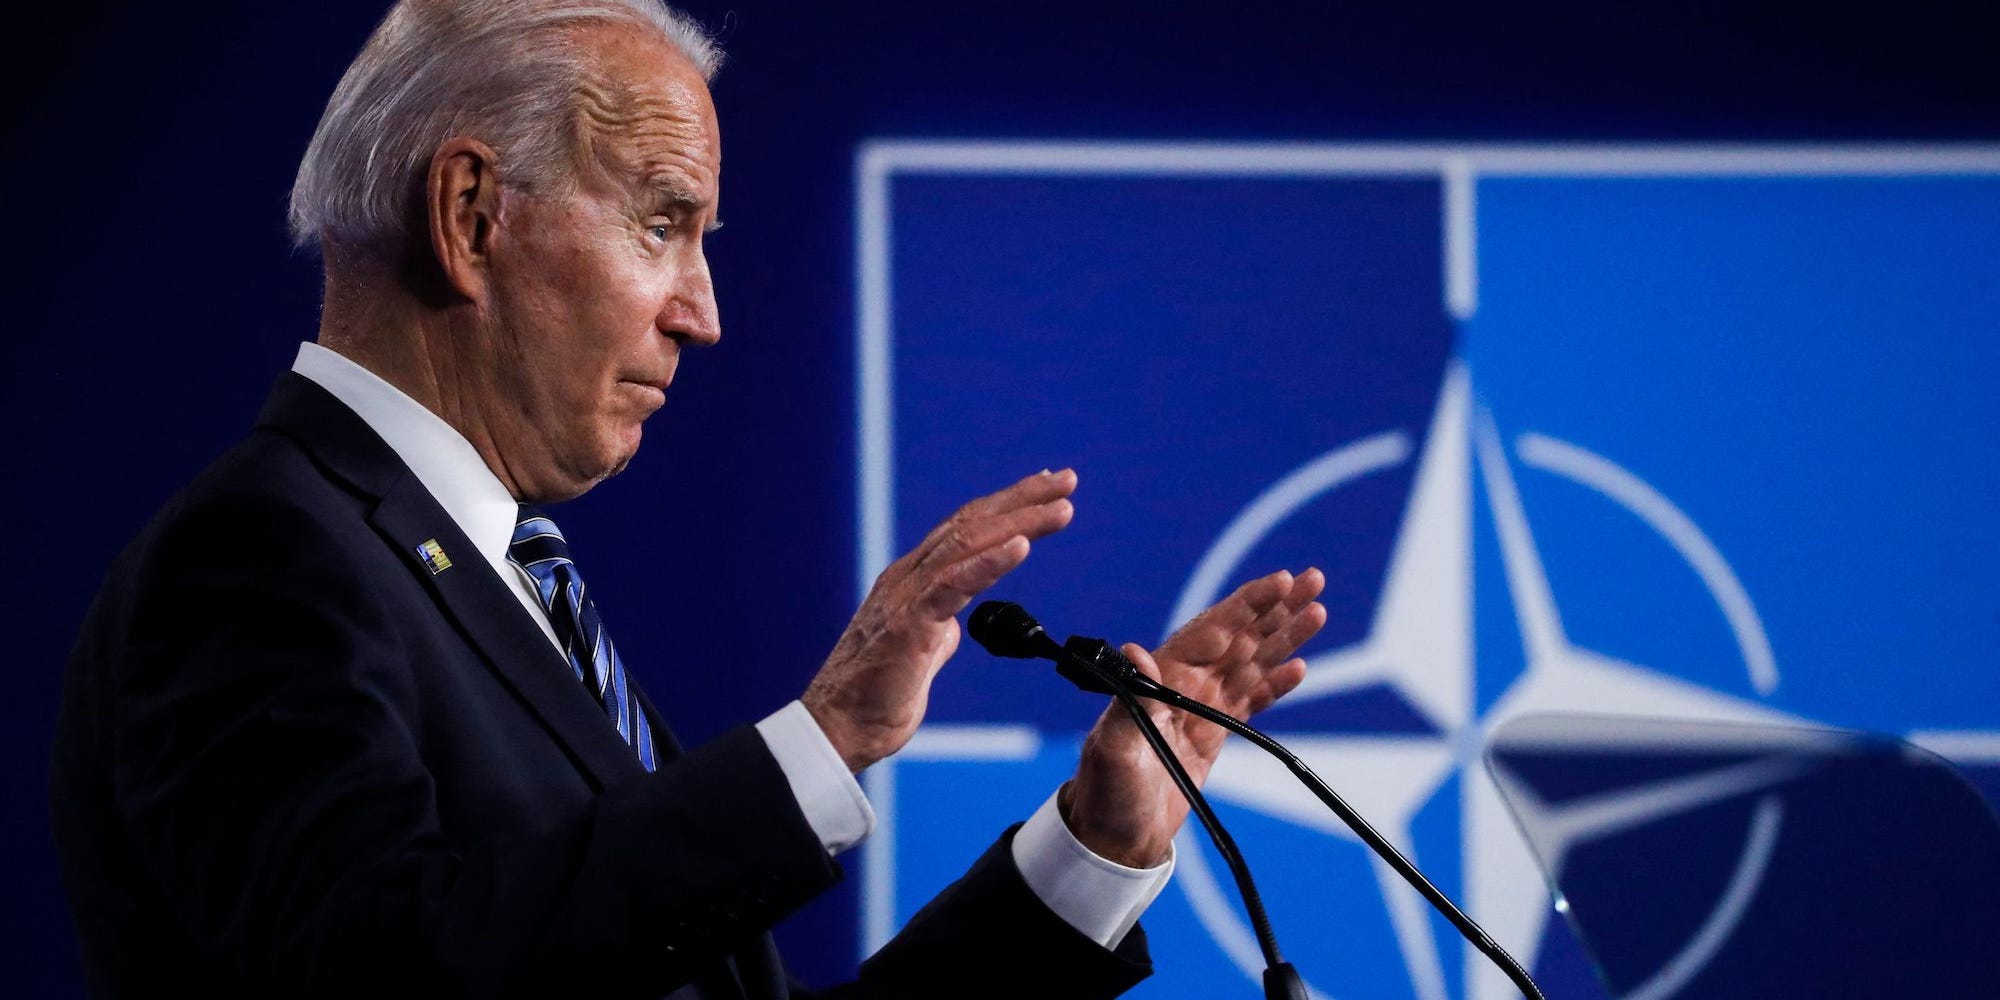 Joe Biden speaks at NATO summit